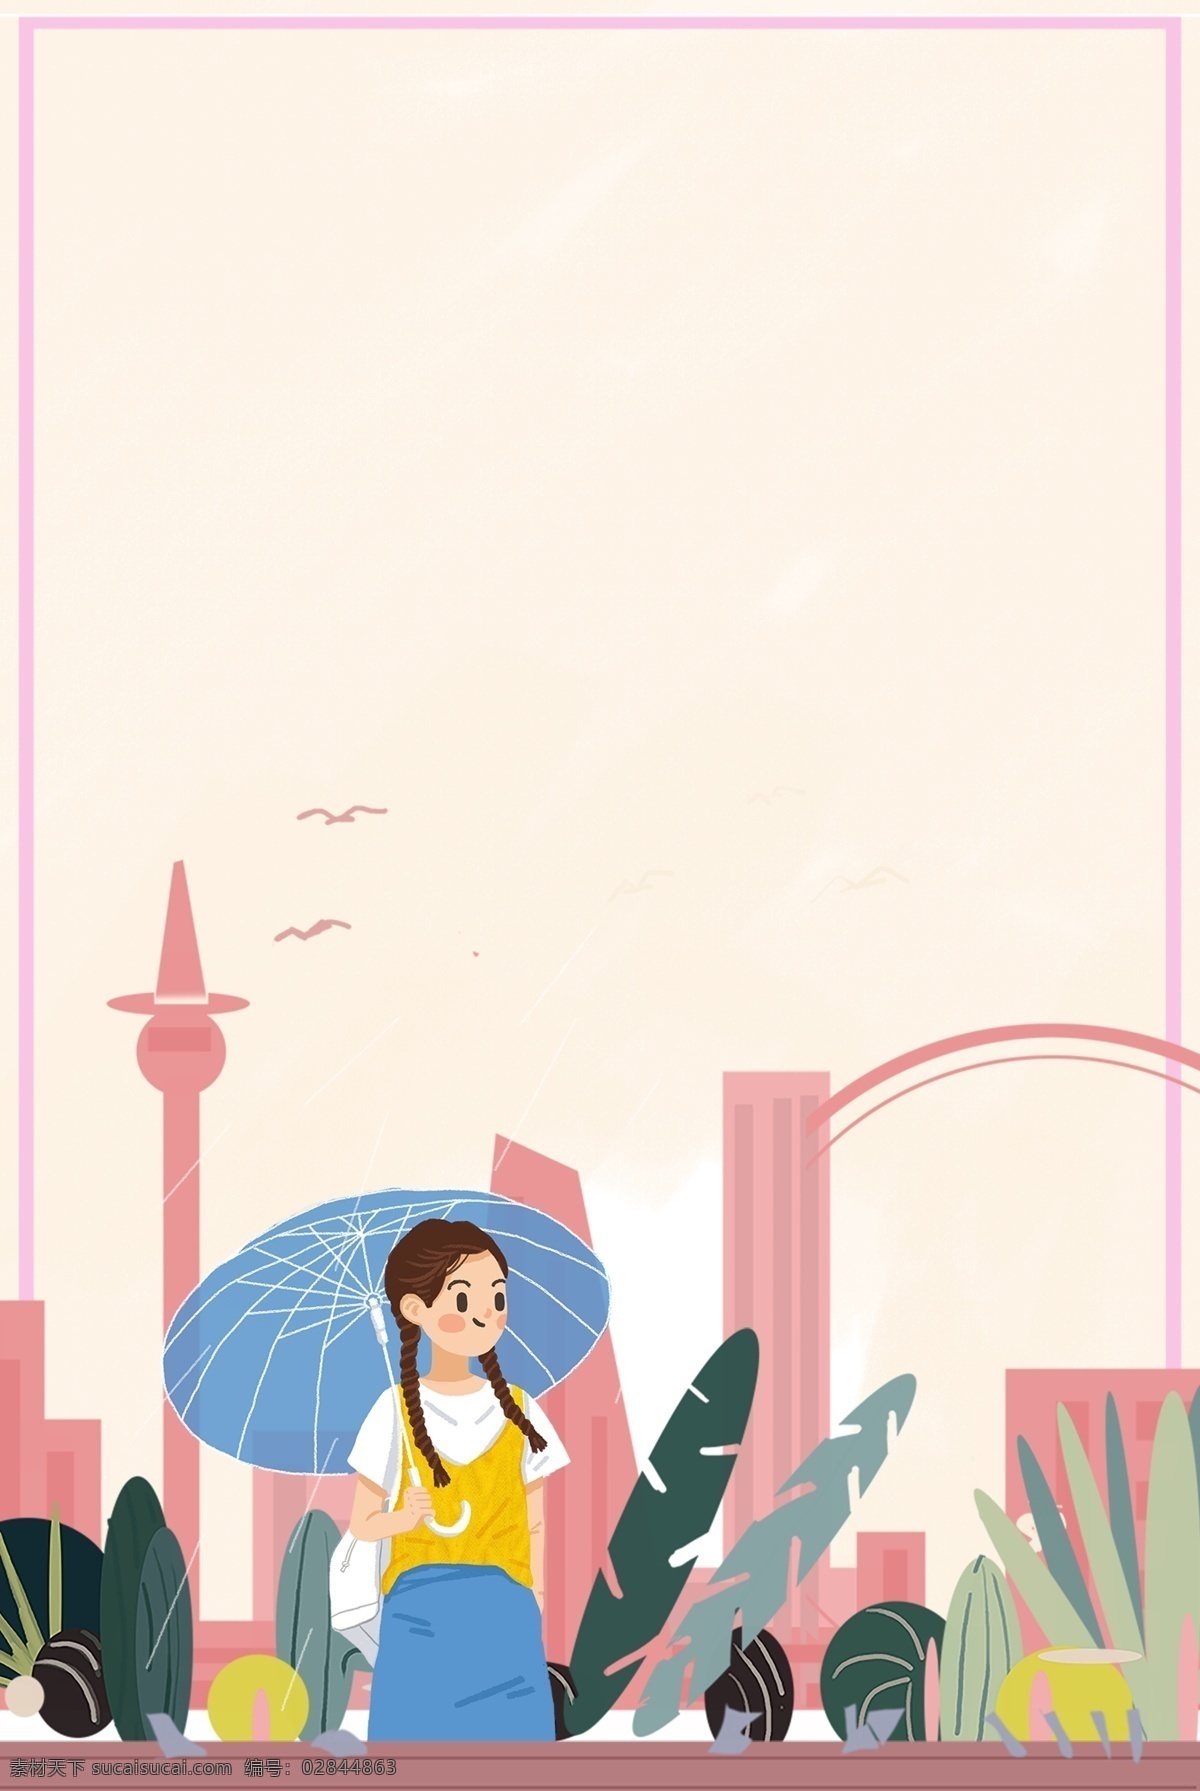 城市生活 粉色 背景 海报 建筑 城市 女孩 雨伞 草木 花簇 边框 促销海拔